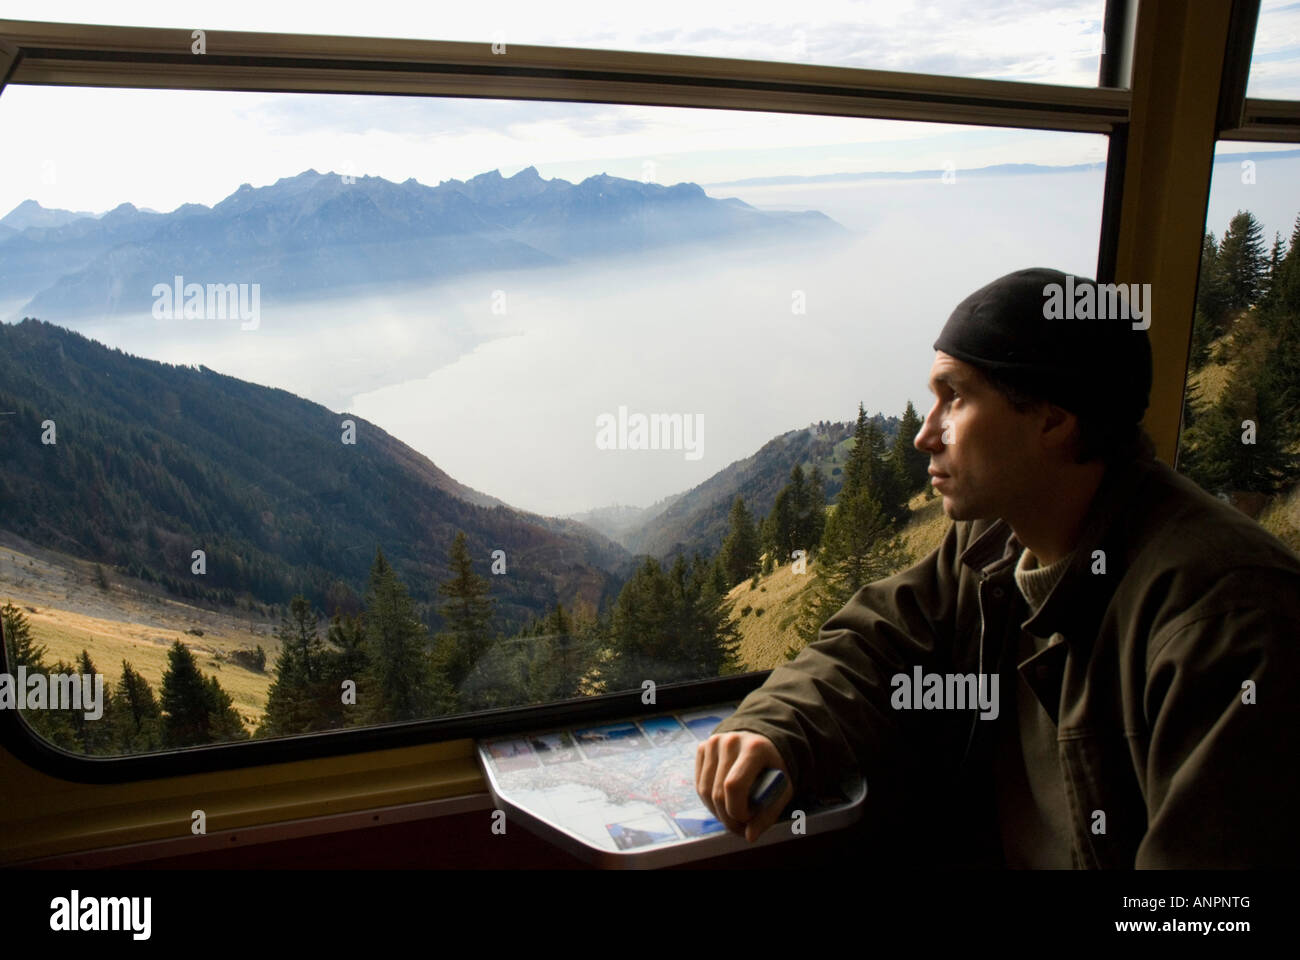 Mountain Train between Montreux and Rochers de Naye Peak ALPS Switzerland Stock Photo